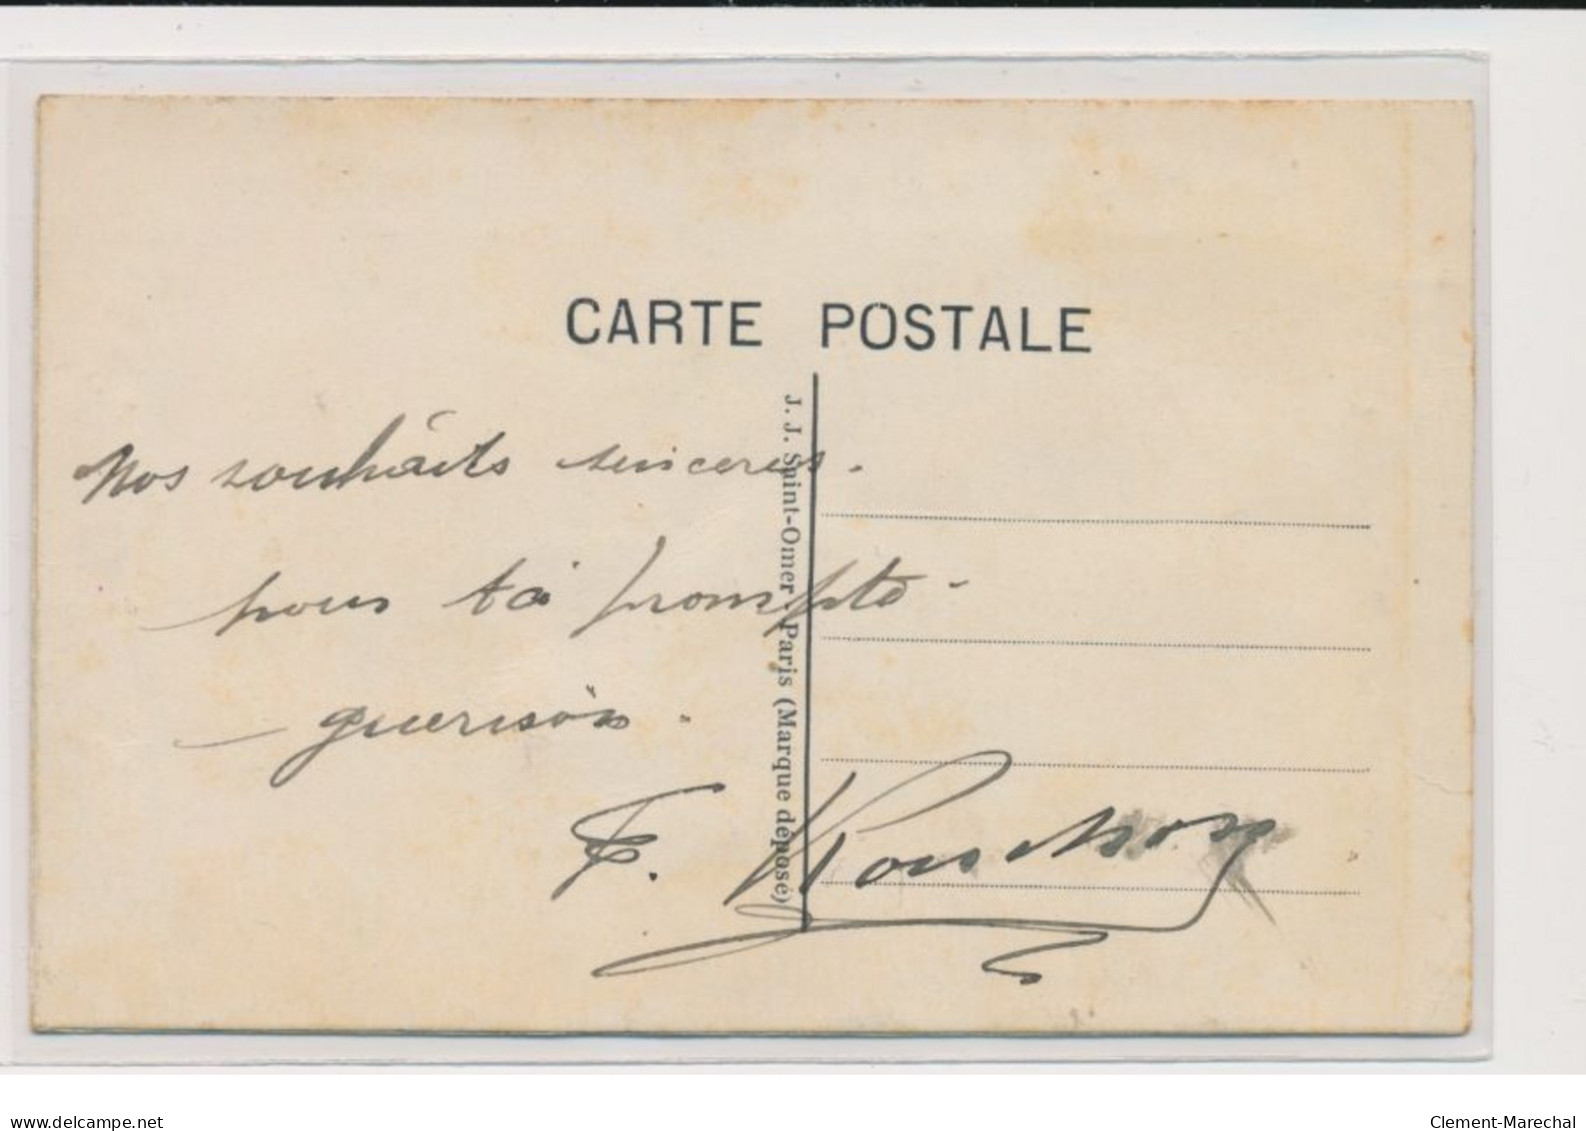 MILITAIRE : Carte Postale Gaufrée A.S.C.(fantaisie - Militaires)- Très Bon état - Regiments